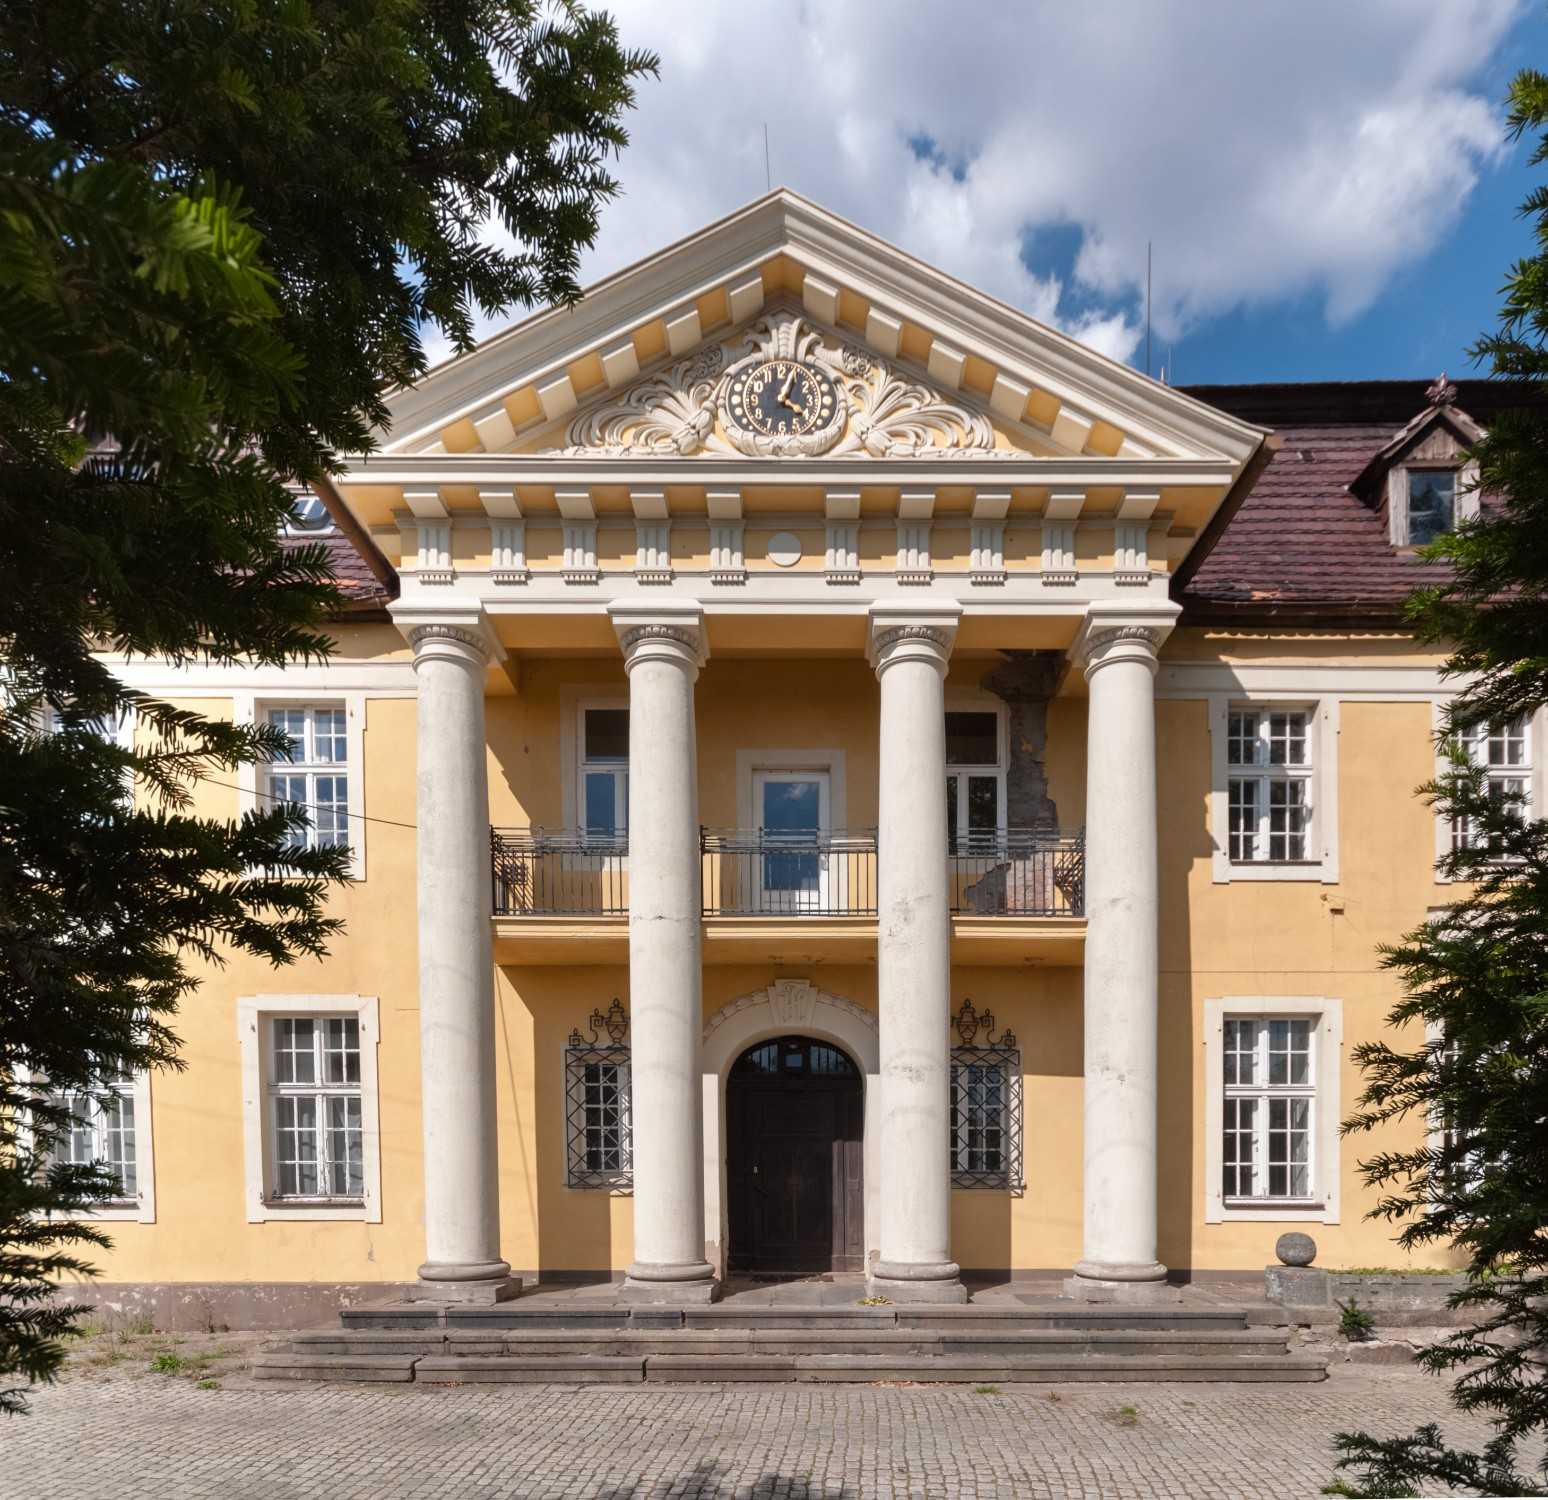 Zdjęcia Piękny klasycystyczny pałac w Niemczech